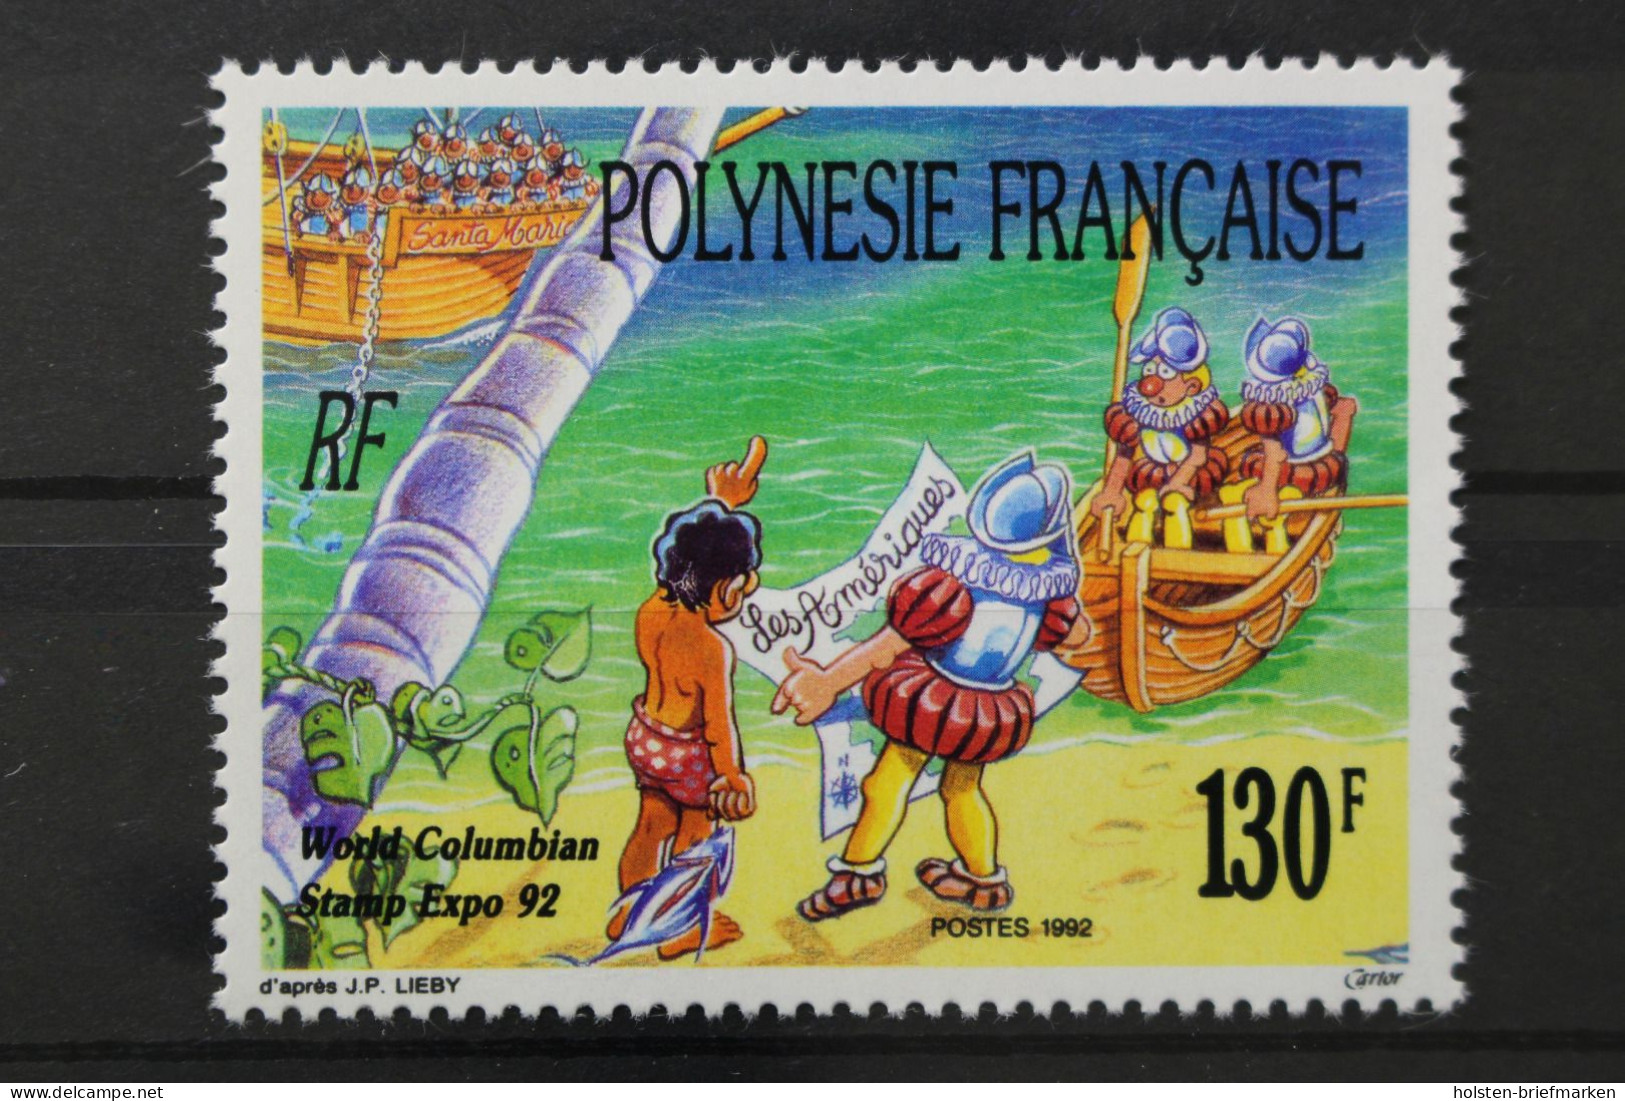 Französisch-Polynesien, MiNr. 609, Postfrisch - Neufs